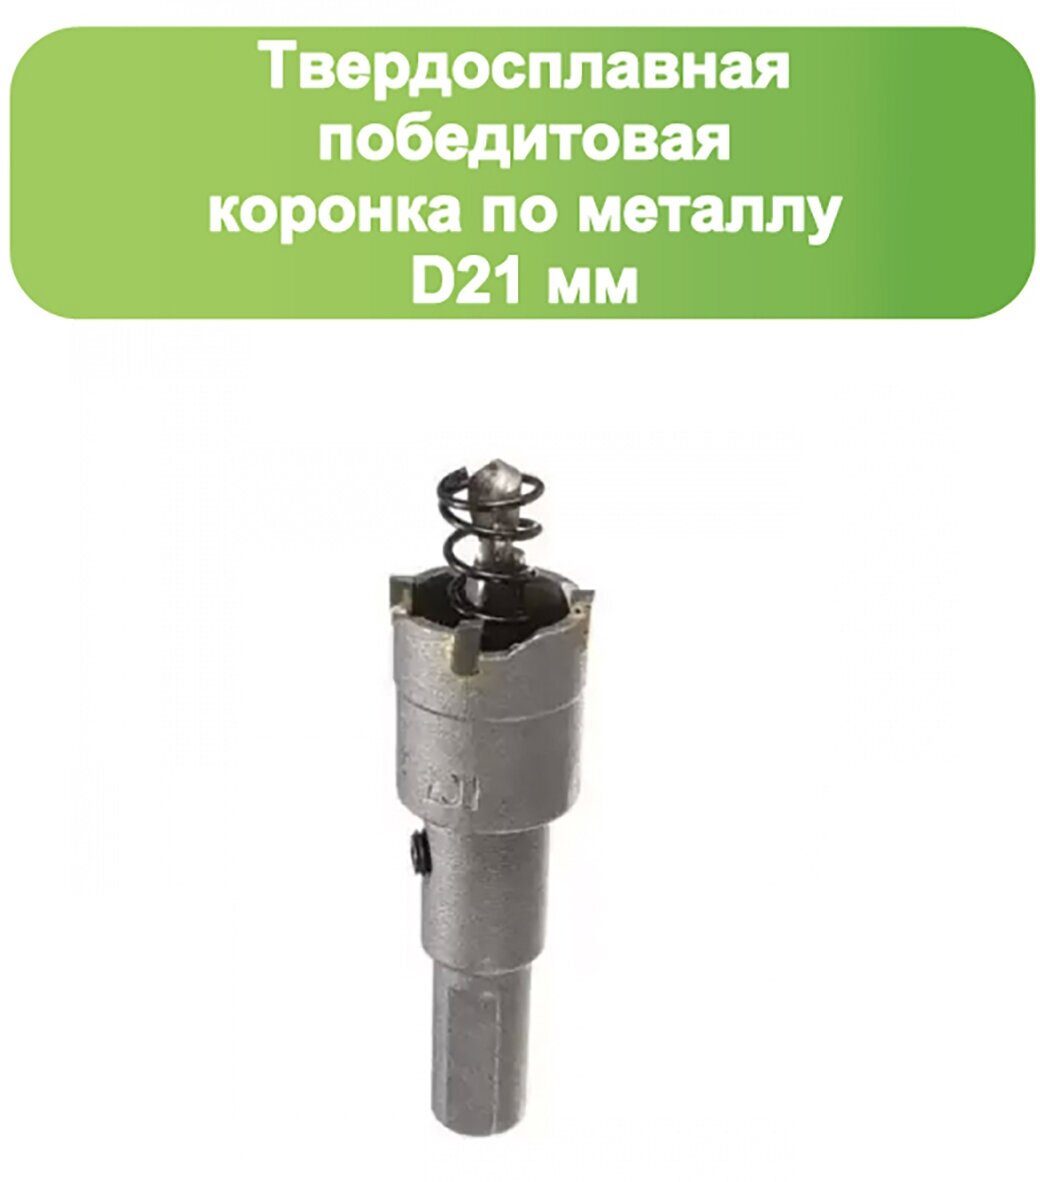 Твердосплавная коронка по металлу с победитом, D 21 мм, Стронг СТК-045